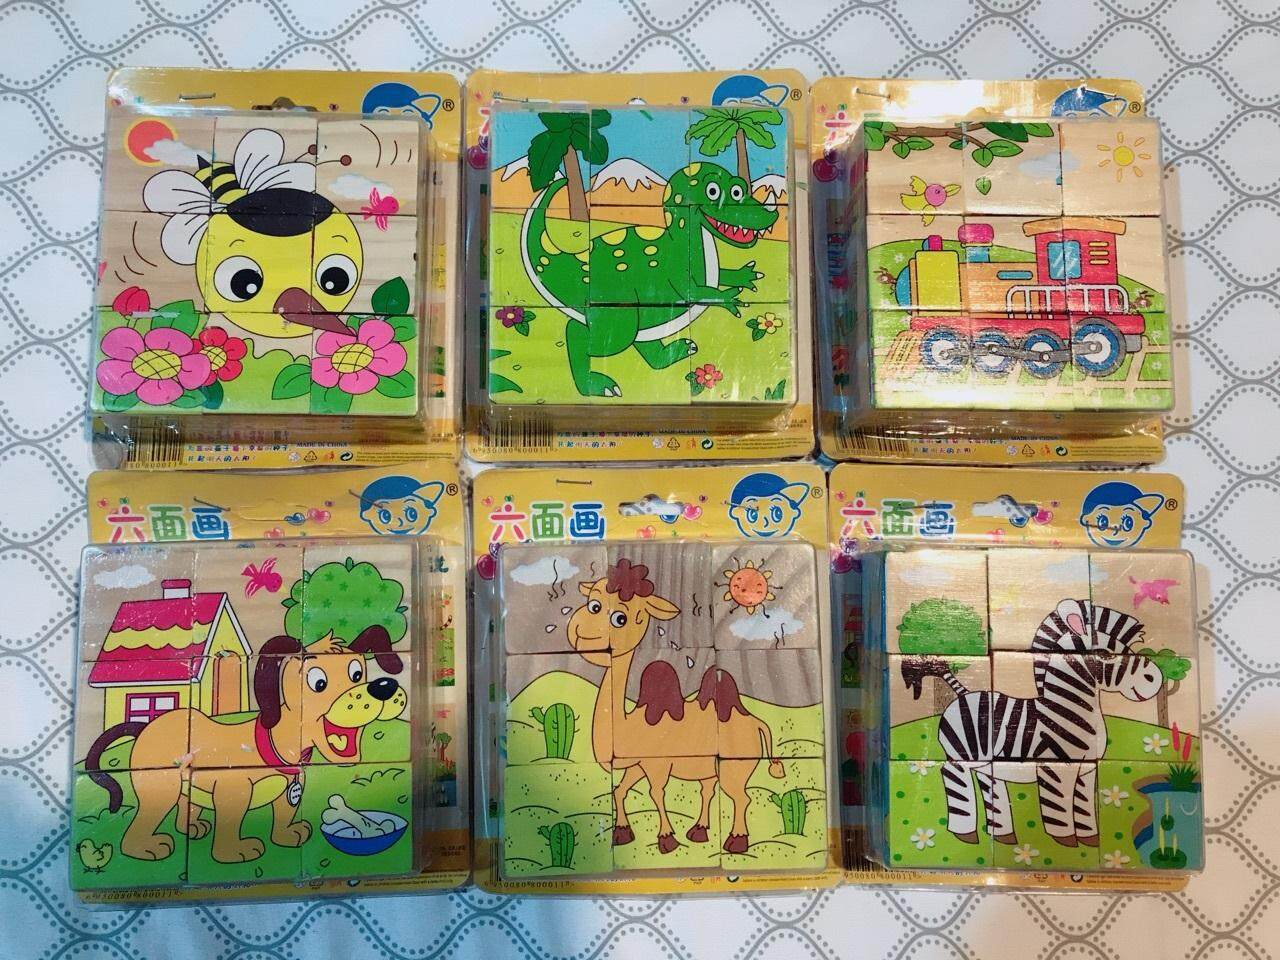 บล็อก ปริศนา เด็ก หกเหลี่ยม ทำจาก ไม้ 7 แบบ เรียนรู้สำหรับ เด็ก ก่อนวัยเรียน       Six-Sided Wooden Painted Childrens Puzzle Blocks, 7 Designs Available, Early Learning Kids Toy